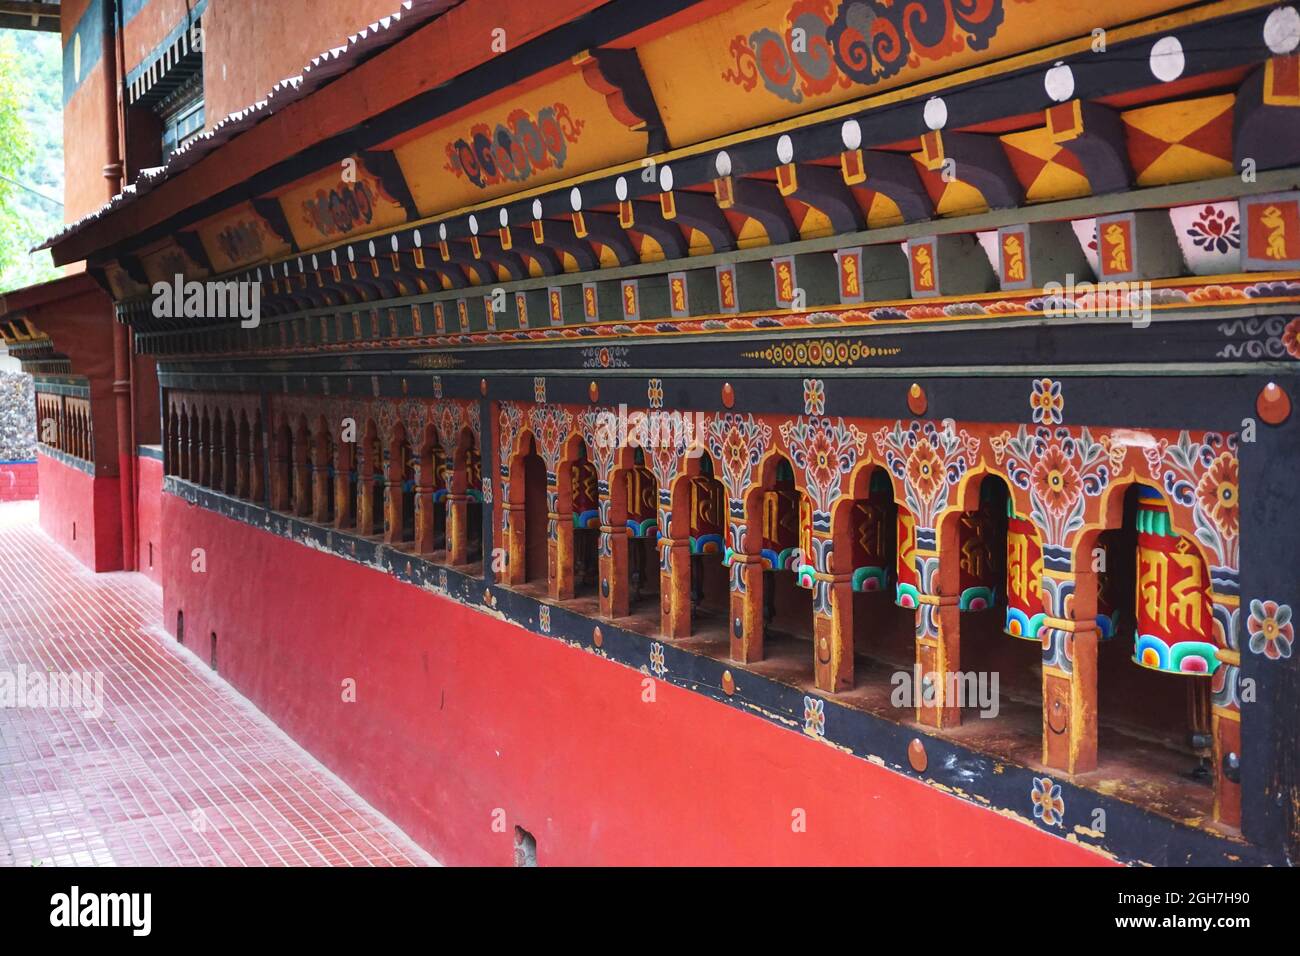 Bunte Gebetsräder säumen eine Wand im Thangtong Dewachen Dupthop Nunnery, Thimphu, Bhutan. Jede Drehung des Rades sendet ein weiteres Gebet himmelwärts. Stockfoto